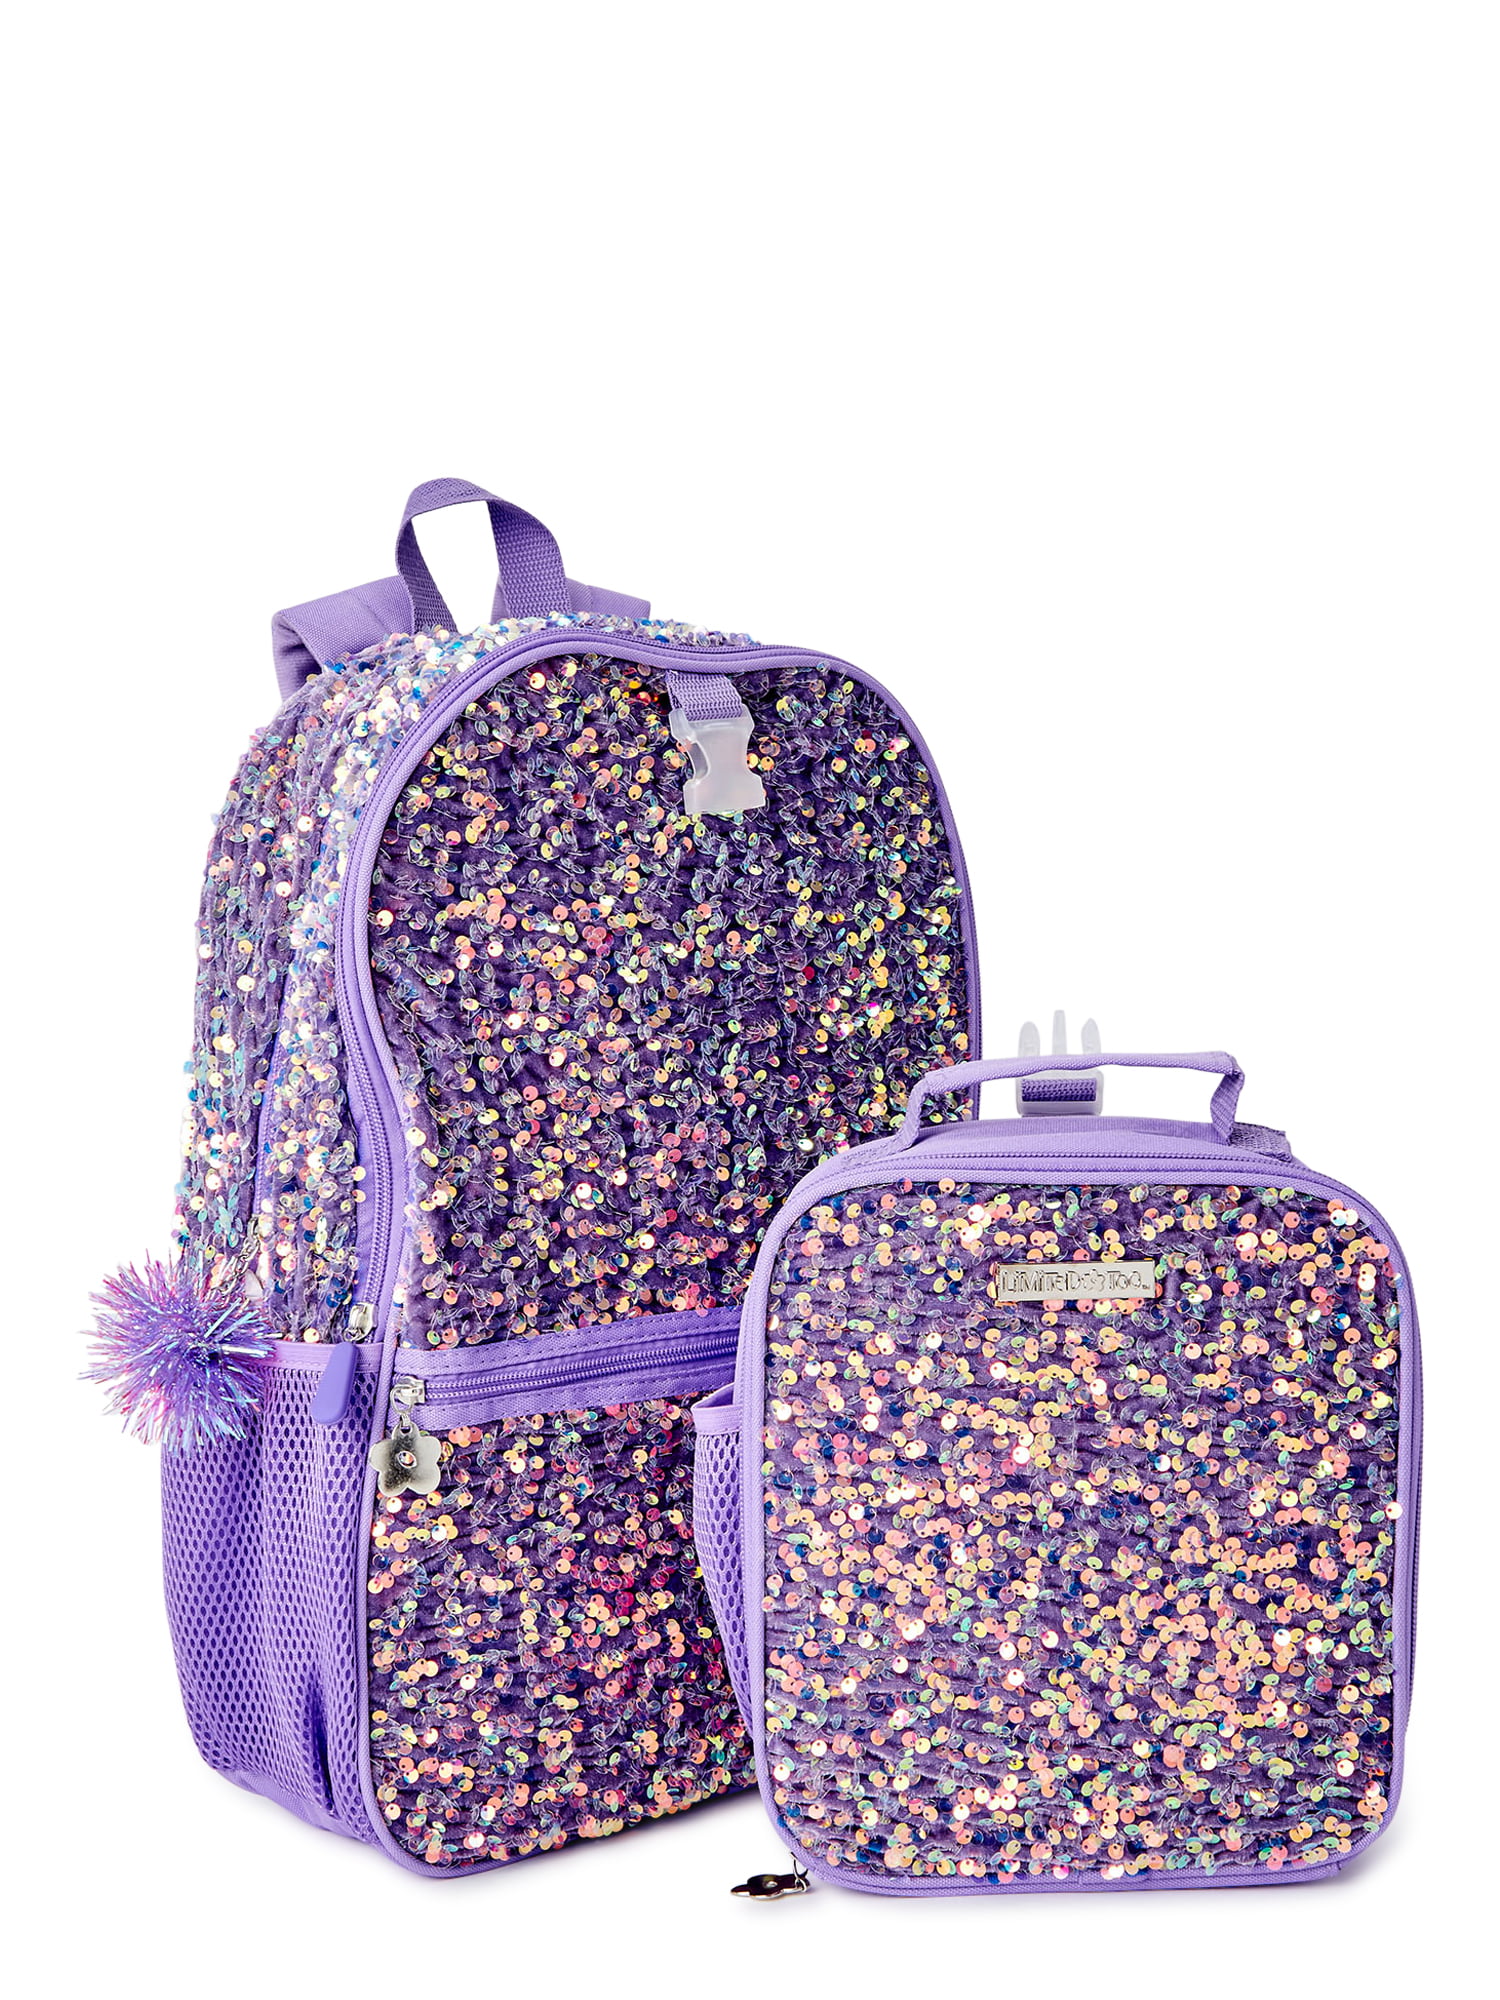 Personalised Kids Paillette Sparkle Gymnastics Pencil Case Sac à dos School Set Bag